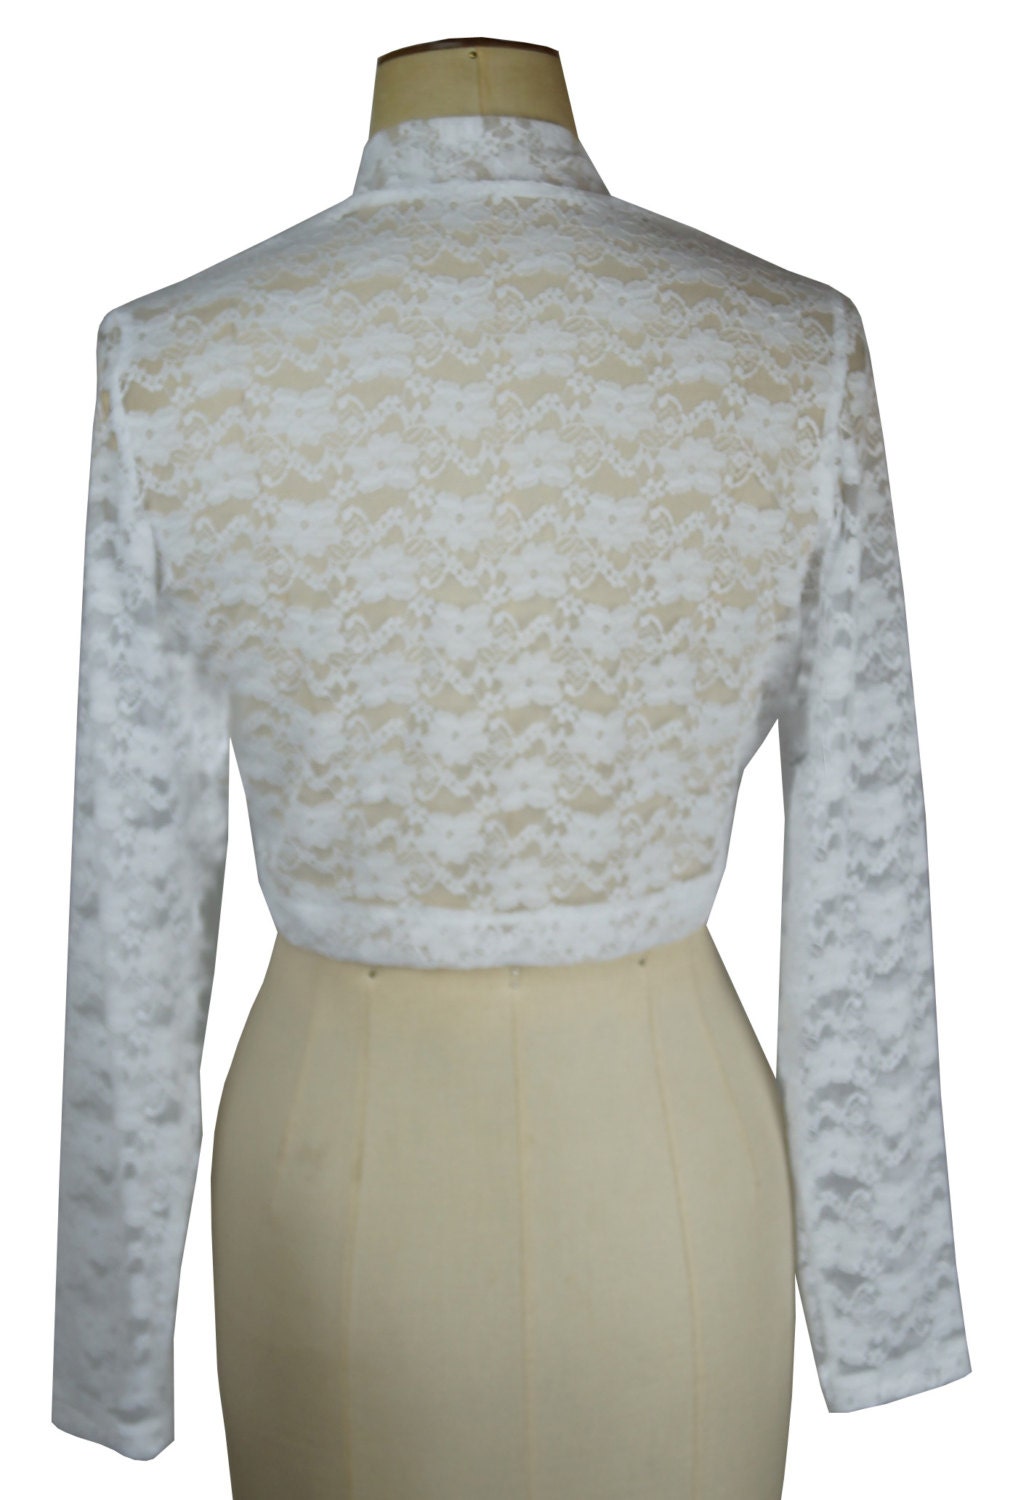 Baylis & Knight New Pure White Lace Cropped Long Sleeve Bolero | Etsy